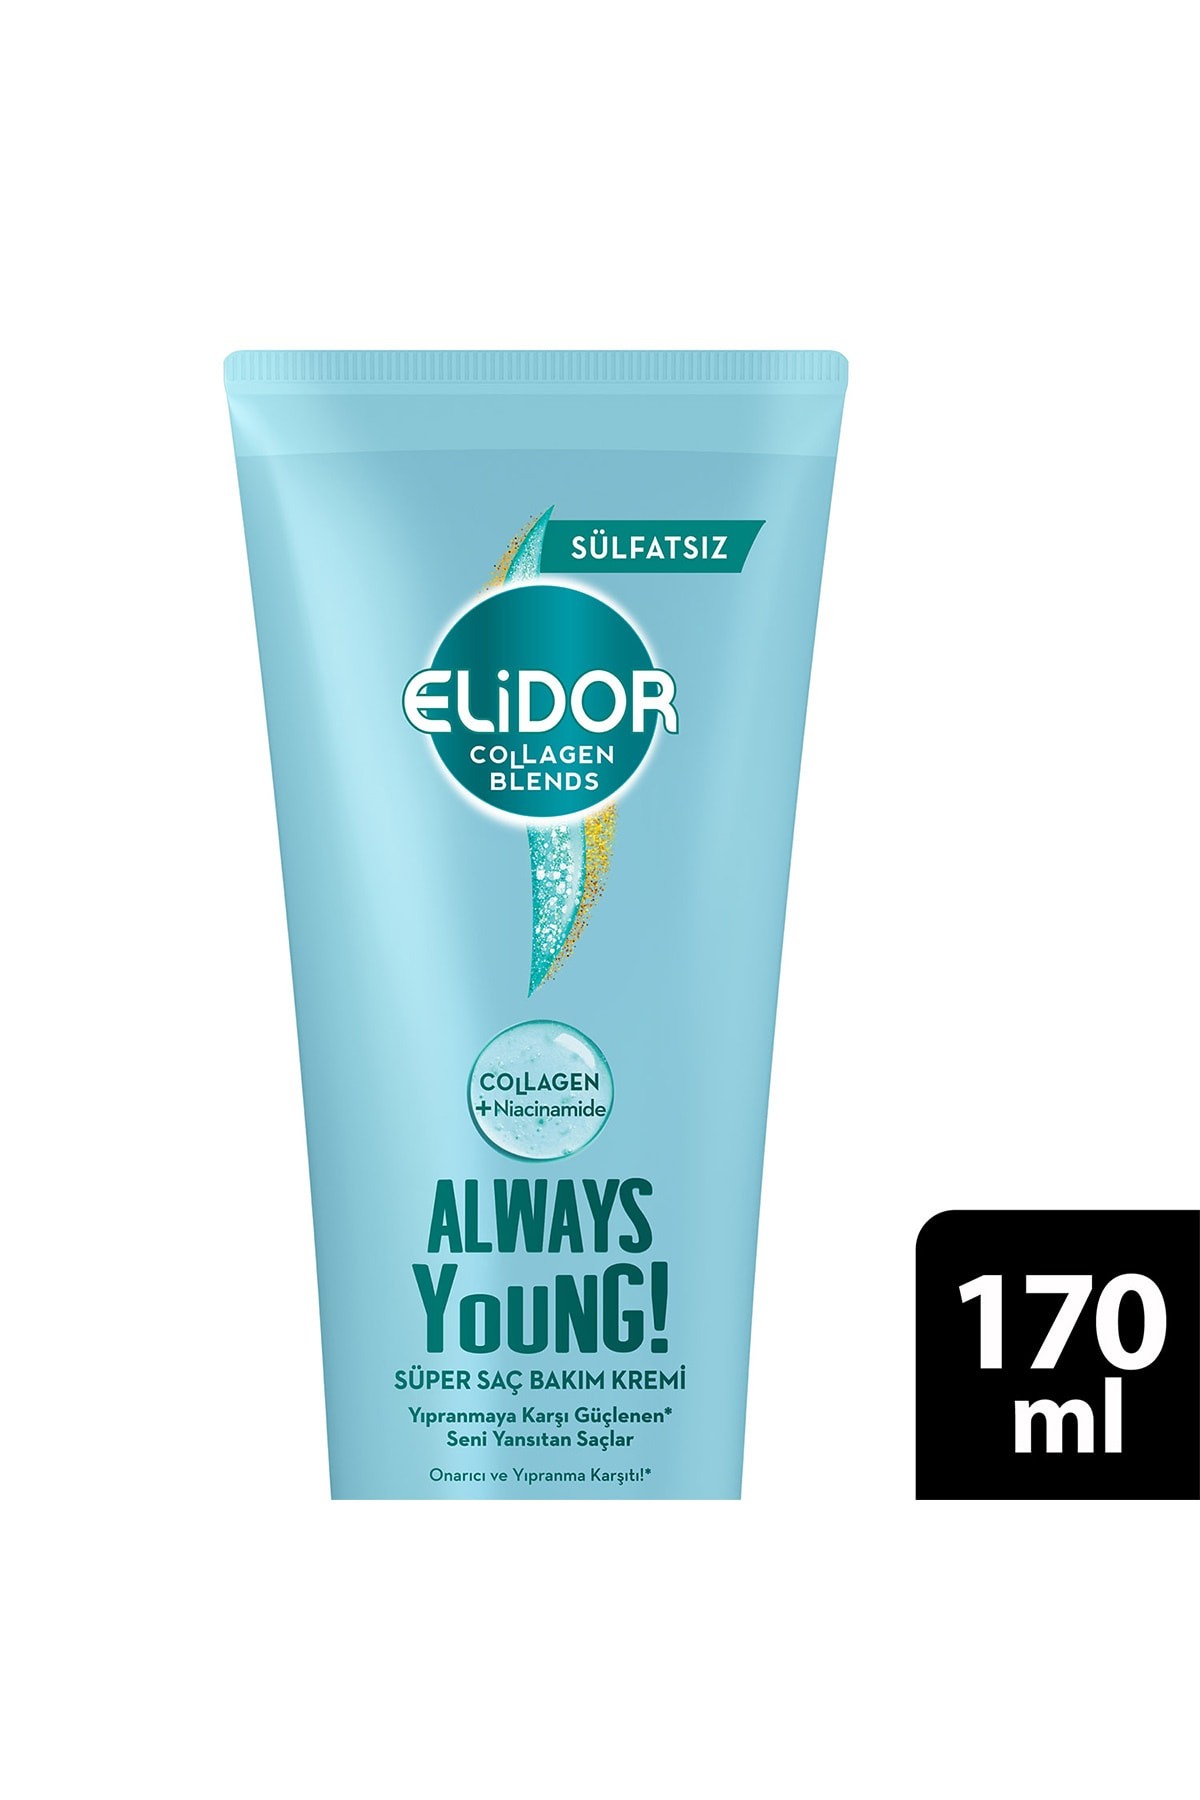 Elidor Collagen Blends Alw ays Young Onarıcı Ve Yıpranma Karşıtı Süper Saç Bakım Kremi 170 ml